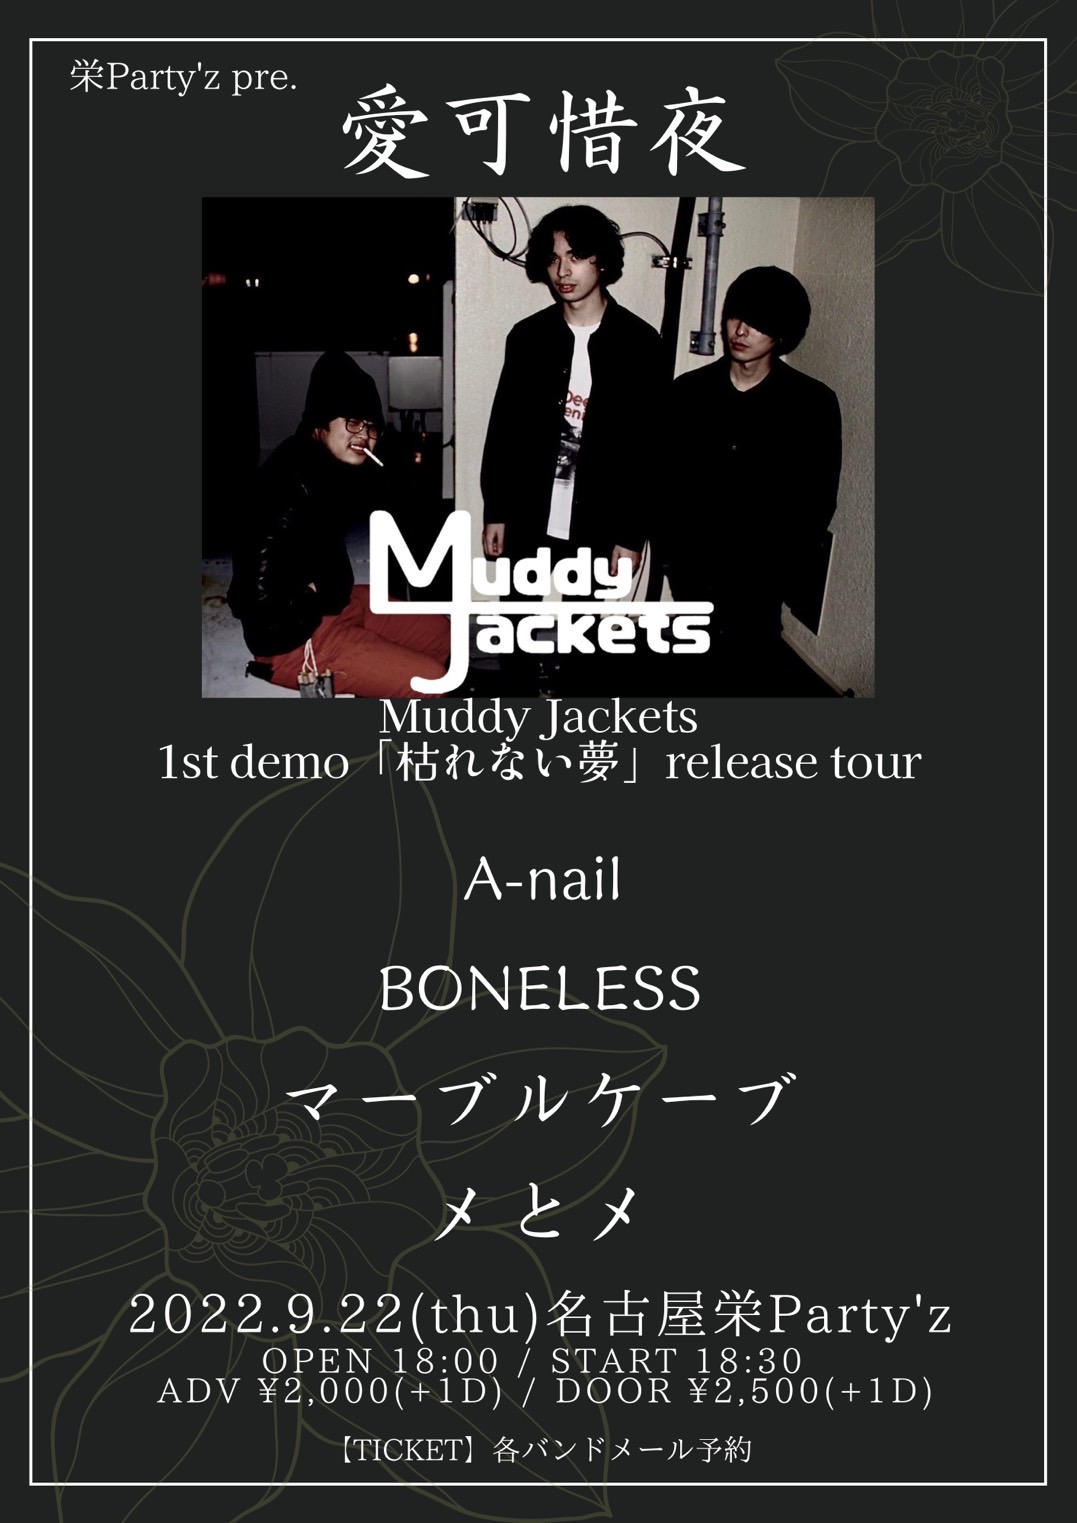 「愛可惜夜」 Muddy Jackets 1st demo「枯れない夢」release tour